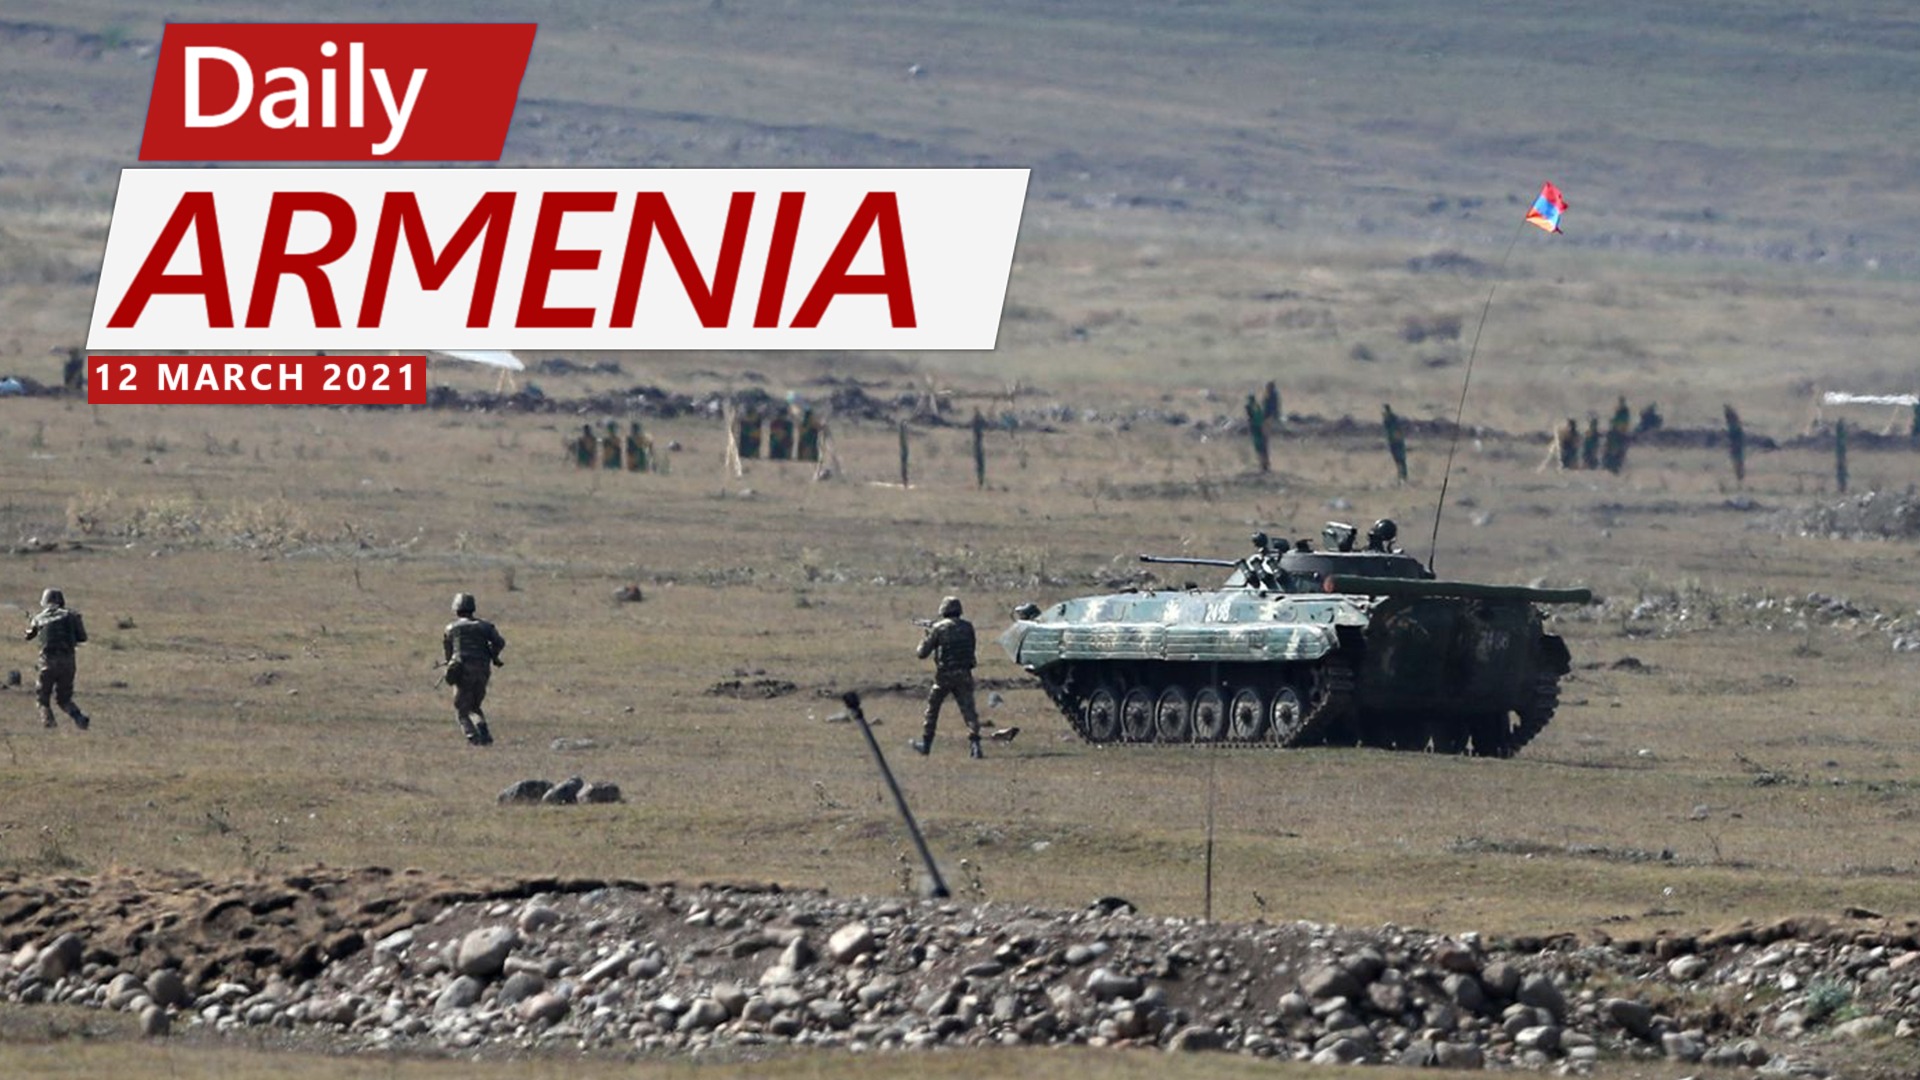 Both Armenia & Azerbaijan to Hold Largescale Military Exercises